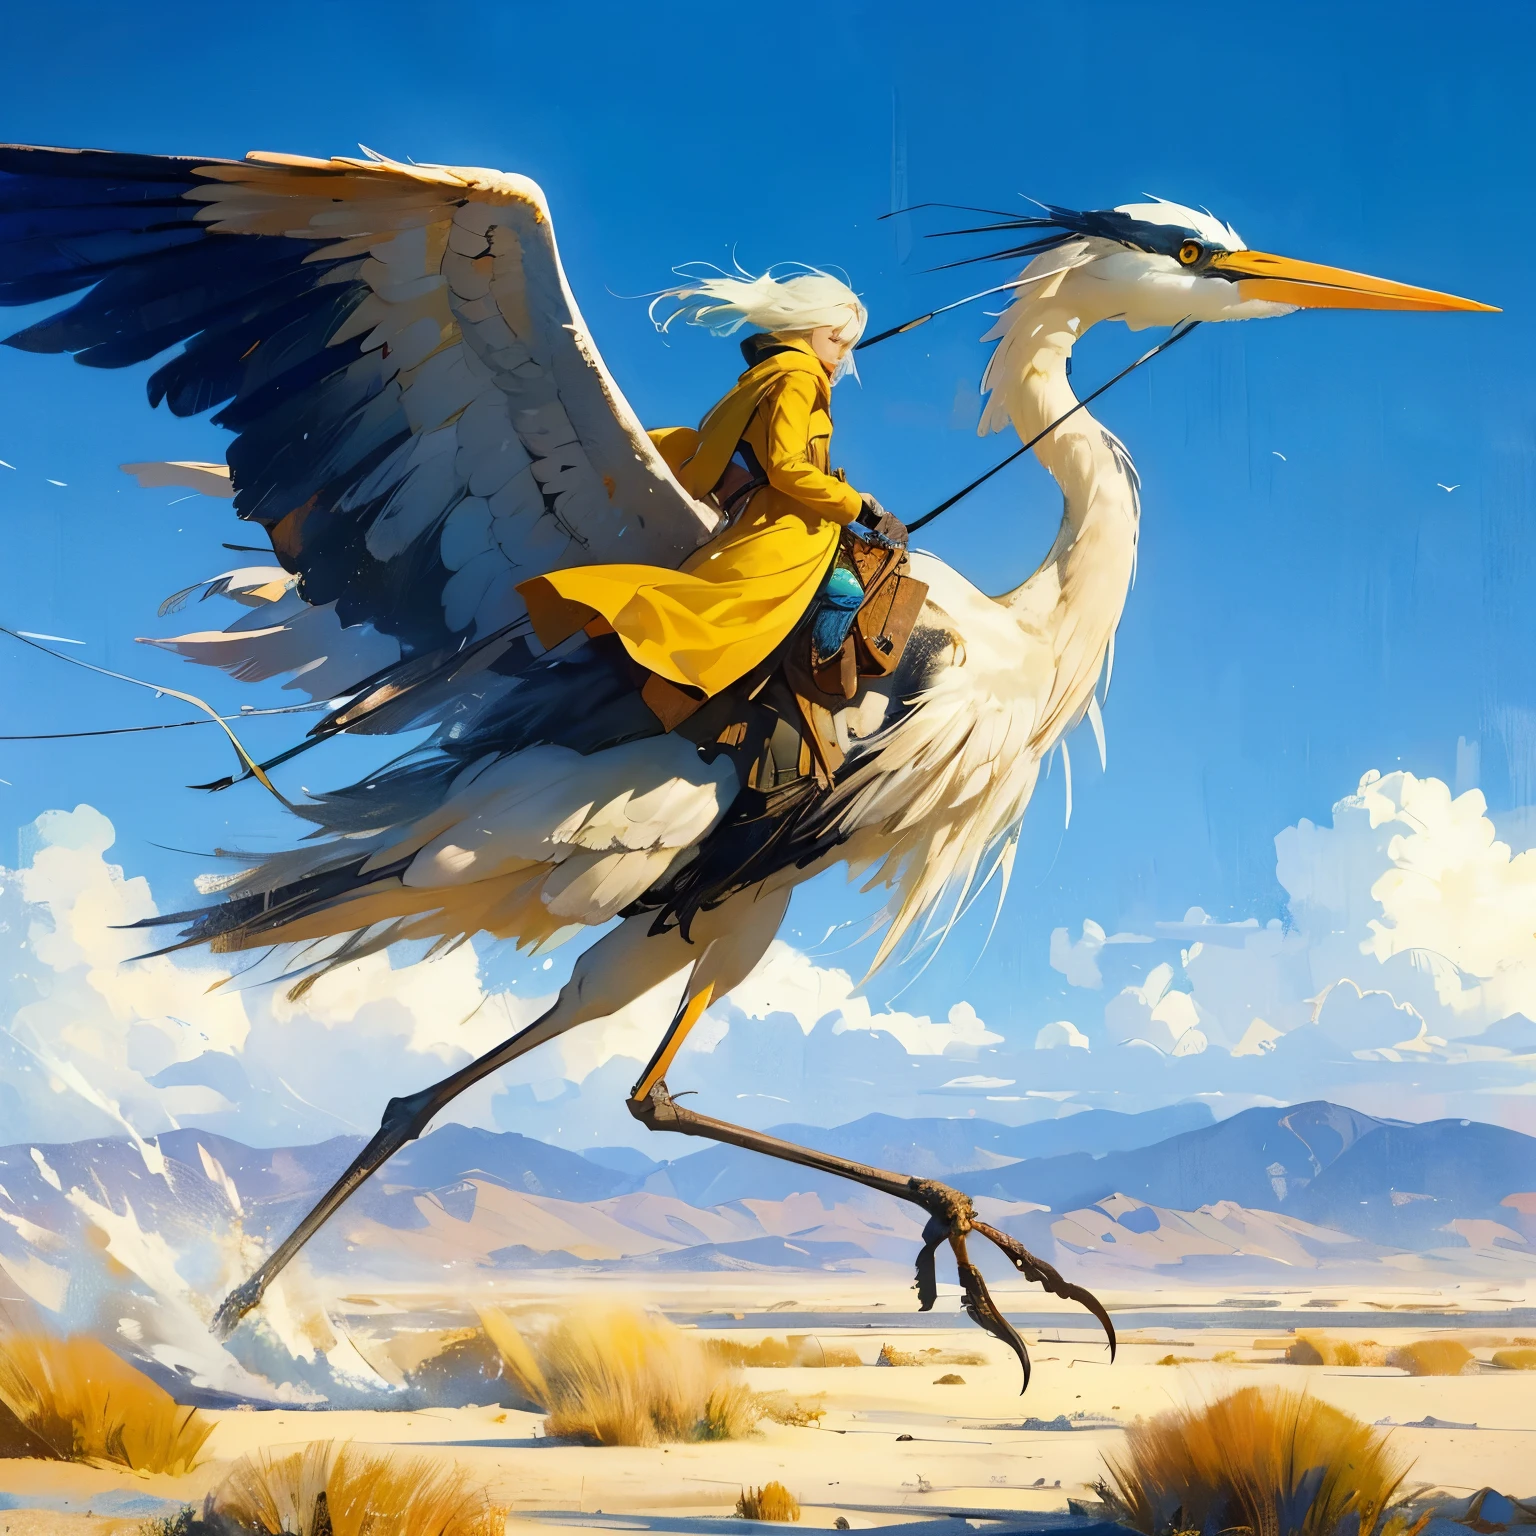 Erschaffe eine Hauptfigur, einen 20 Fuß großen, zweibeinigen Vogel, der einen weißhaarigen Mann in einem Sattel trägt, zweibeiniger Vogel, der dem großen blauen Reiher ähnelt, der Vogel ist gesät, der Vogel hat nur zwei Beine, Vogel hat nur zwei Beine, in einer wunderschönen flachen Wüstenlandschaft eines 3D-Videospiels, dynamische pose, auf einem riesigen, hohen Blaureiher reitend, Jean Giraud, extreme Totale, im Spritzimpressionismus-Kunststil, Die Hauptfigur trägt einen langen gelbbraunen Trenchcoat mit Kapuze und getönter Schutzbrille, endlose Meilen wehender Sanddünen, Reiter in weiter Ferne, blauer Himmel mit wogenden weißen Wolken rosa gefärbt, wehender kochender wirbelnder Wind, wehende Grasblätter, dunkelgelb und azurblau, majestätisch, beeindruckende Seestücke, fotorealistische Darstellung, anmutiges Gleichgewicht, wimmelbilder, Andrew Wyeth, orange, Grasblätter, im Kunststil von Jean Giraud,flynnrider
